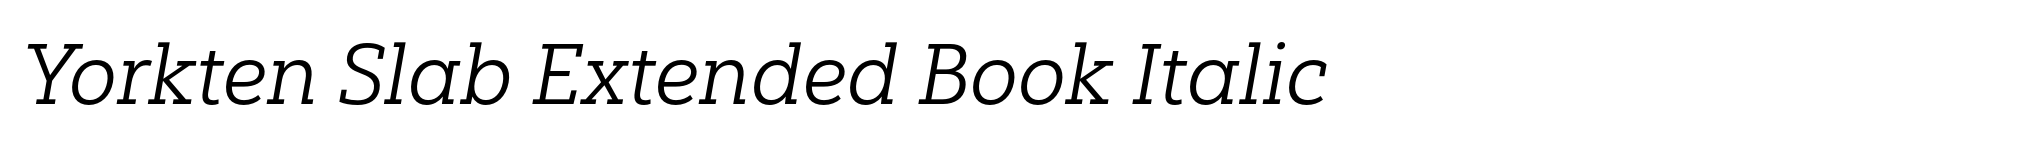 Yorkten Slab Extended Book Italic image